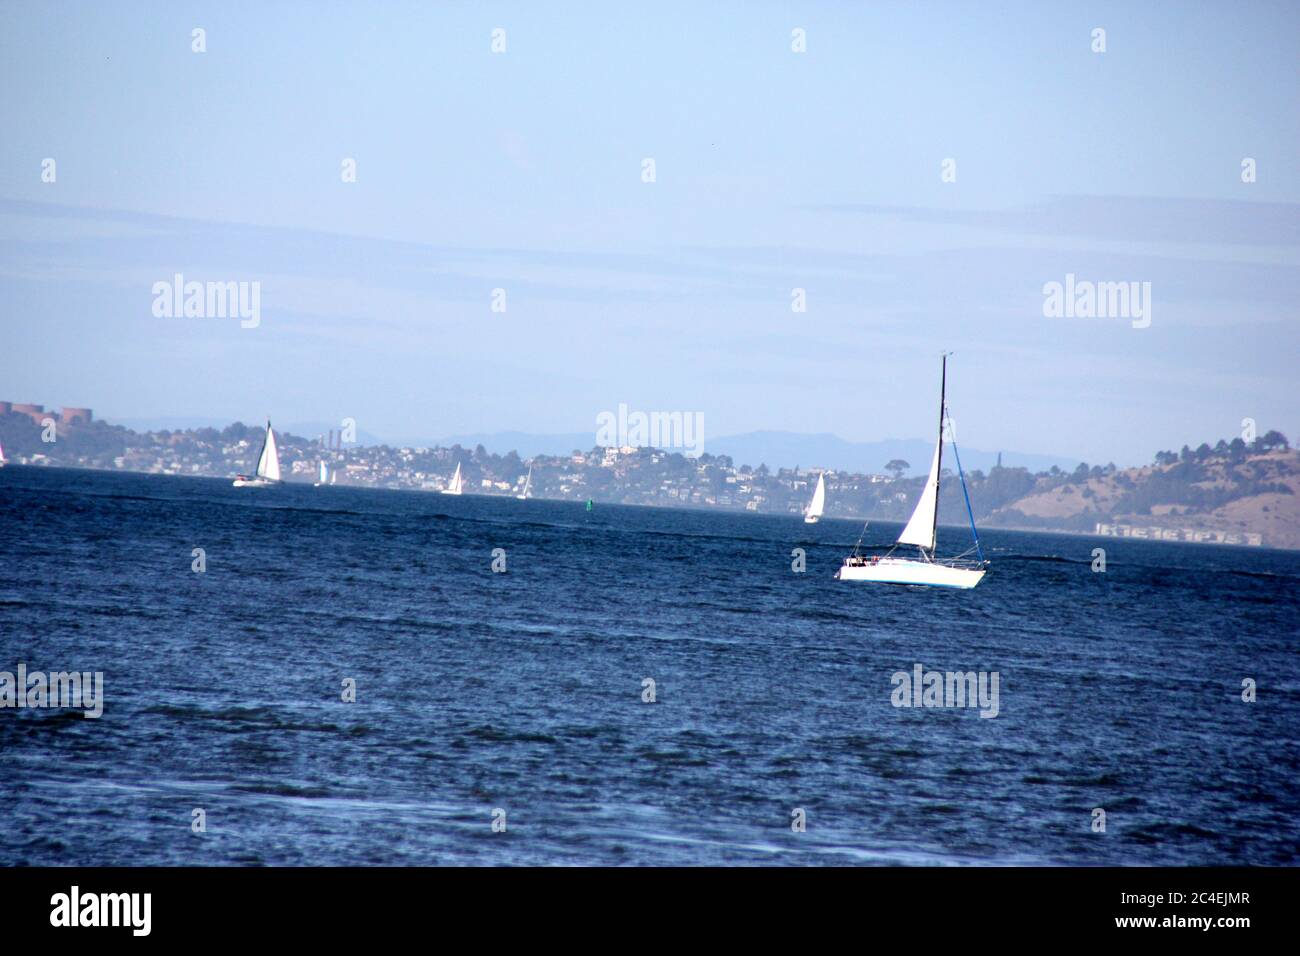 San Francisco Bay area in California, USA Stock Photo